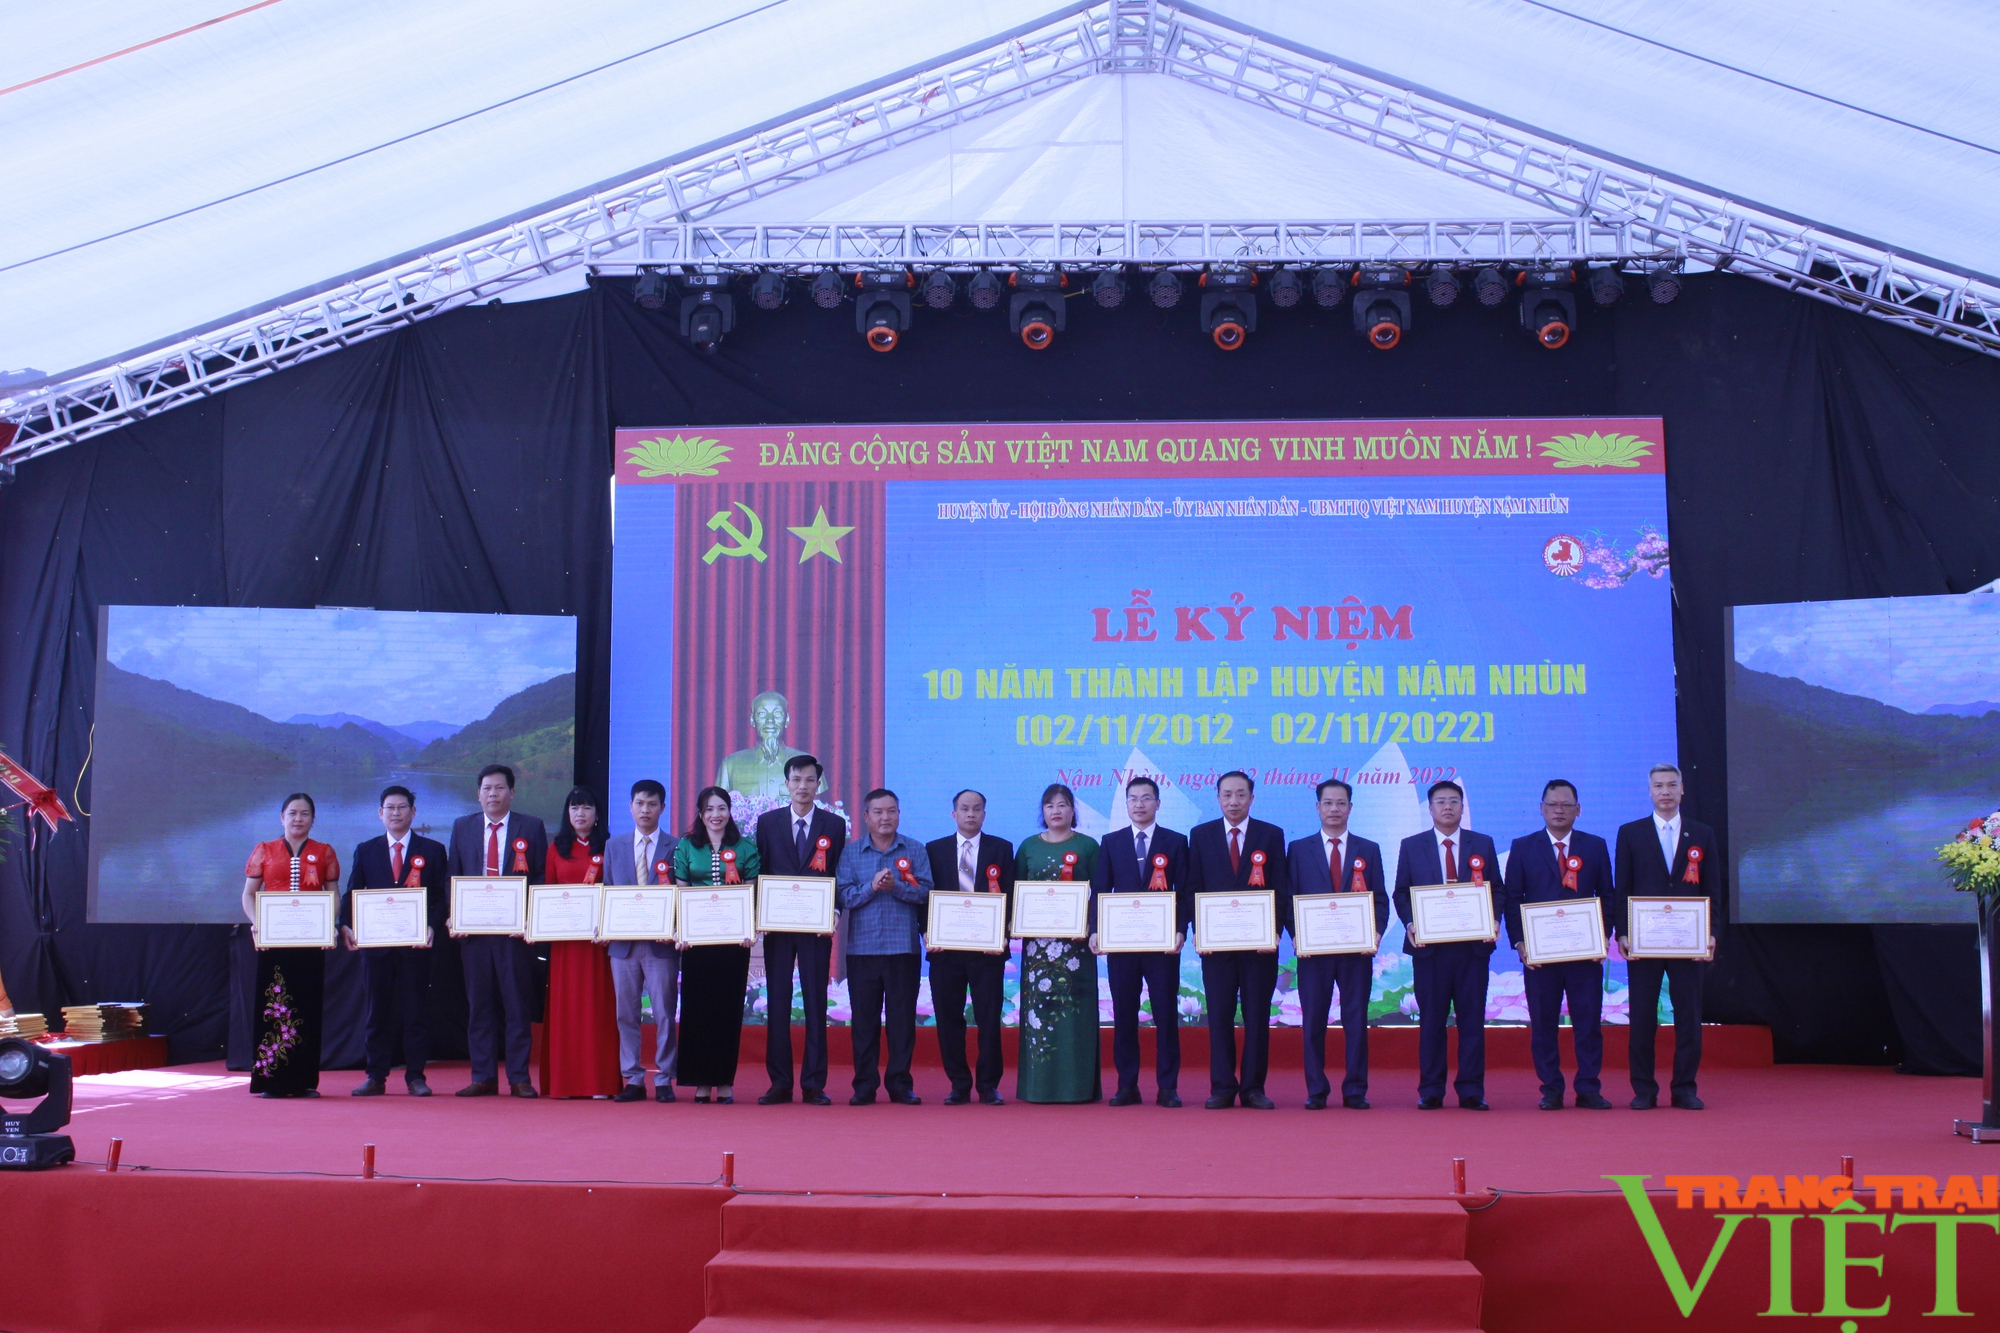 Lai Châu: Kỷ niệm 10 năm thành lập huyện Nậm Nhùn - Ảnh 7.